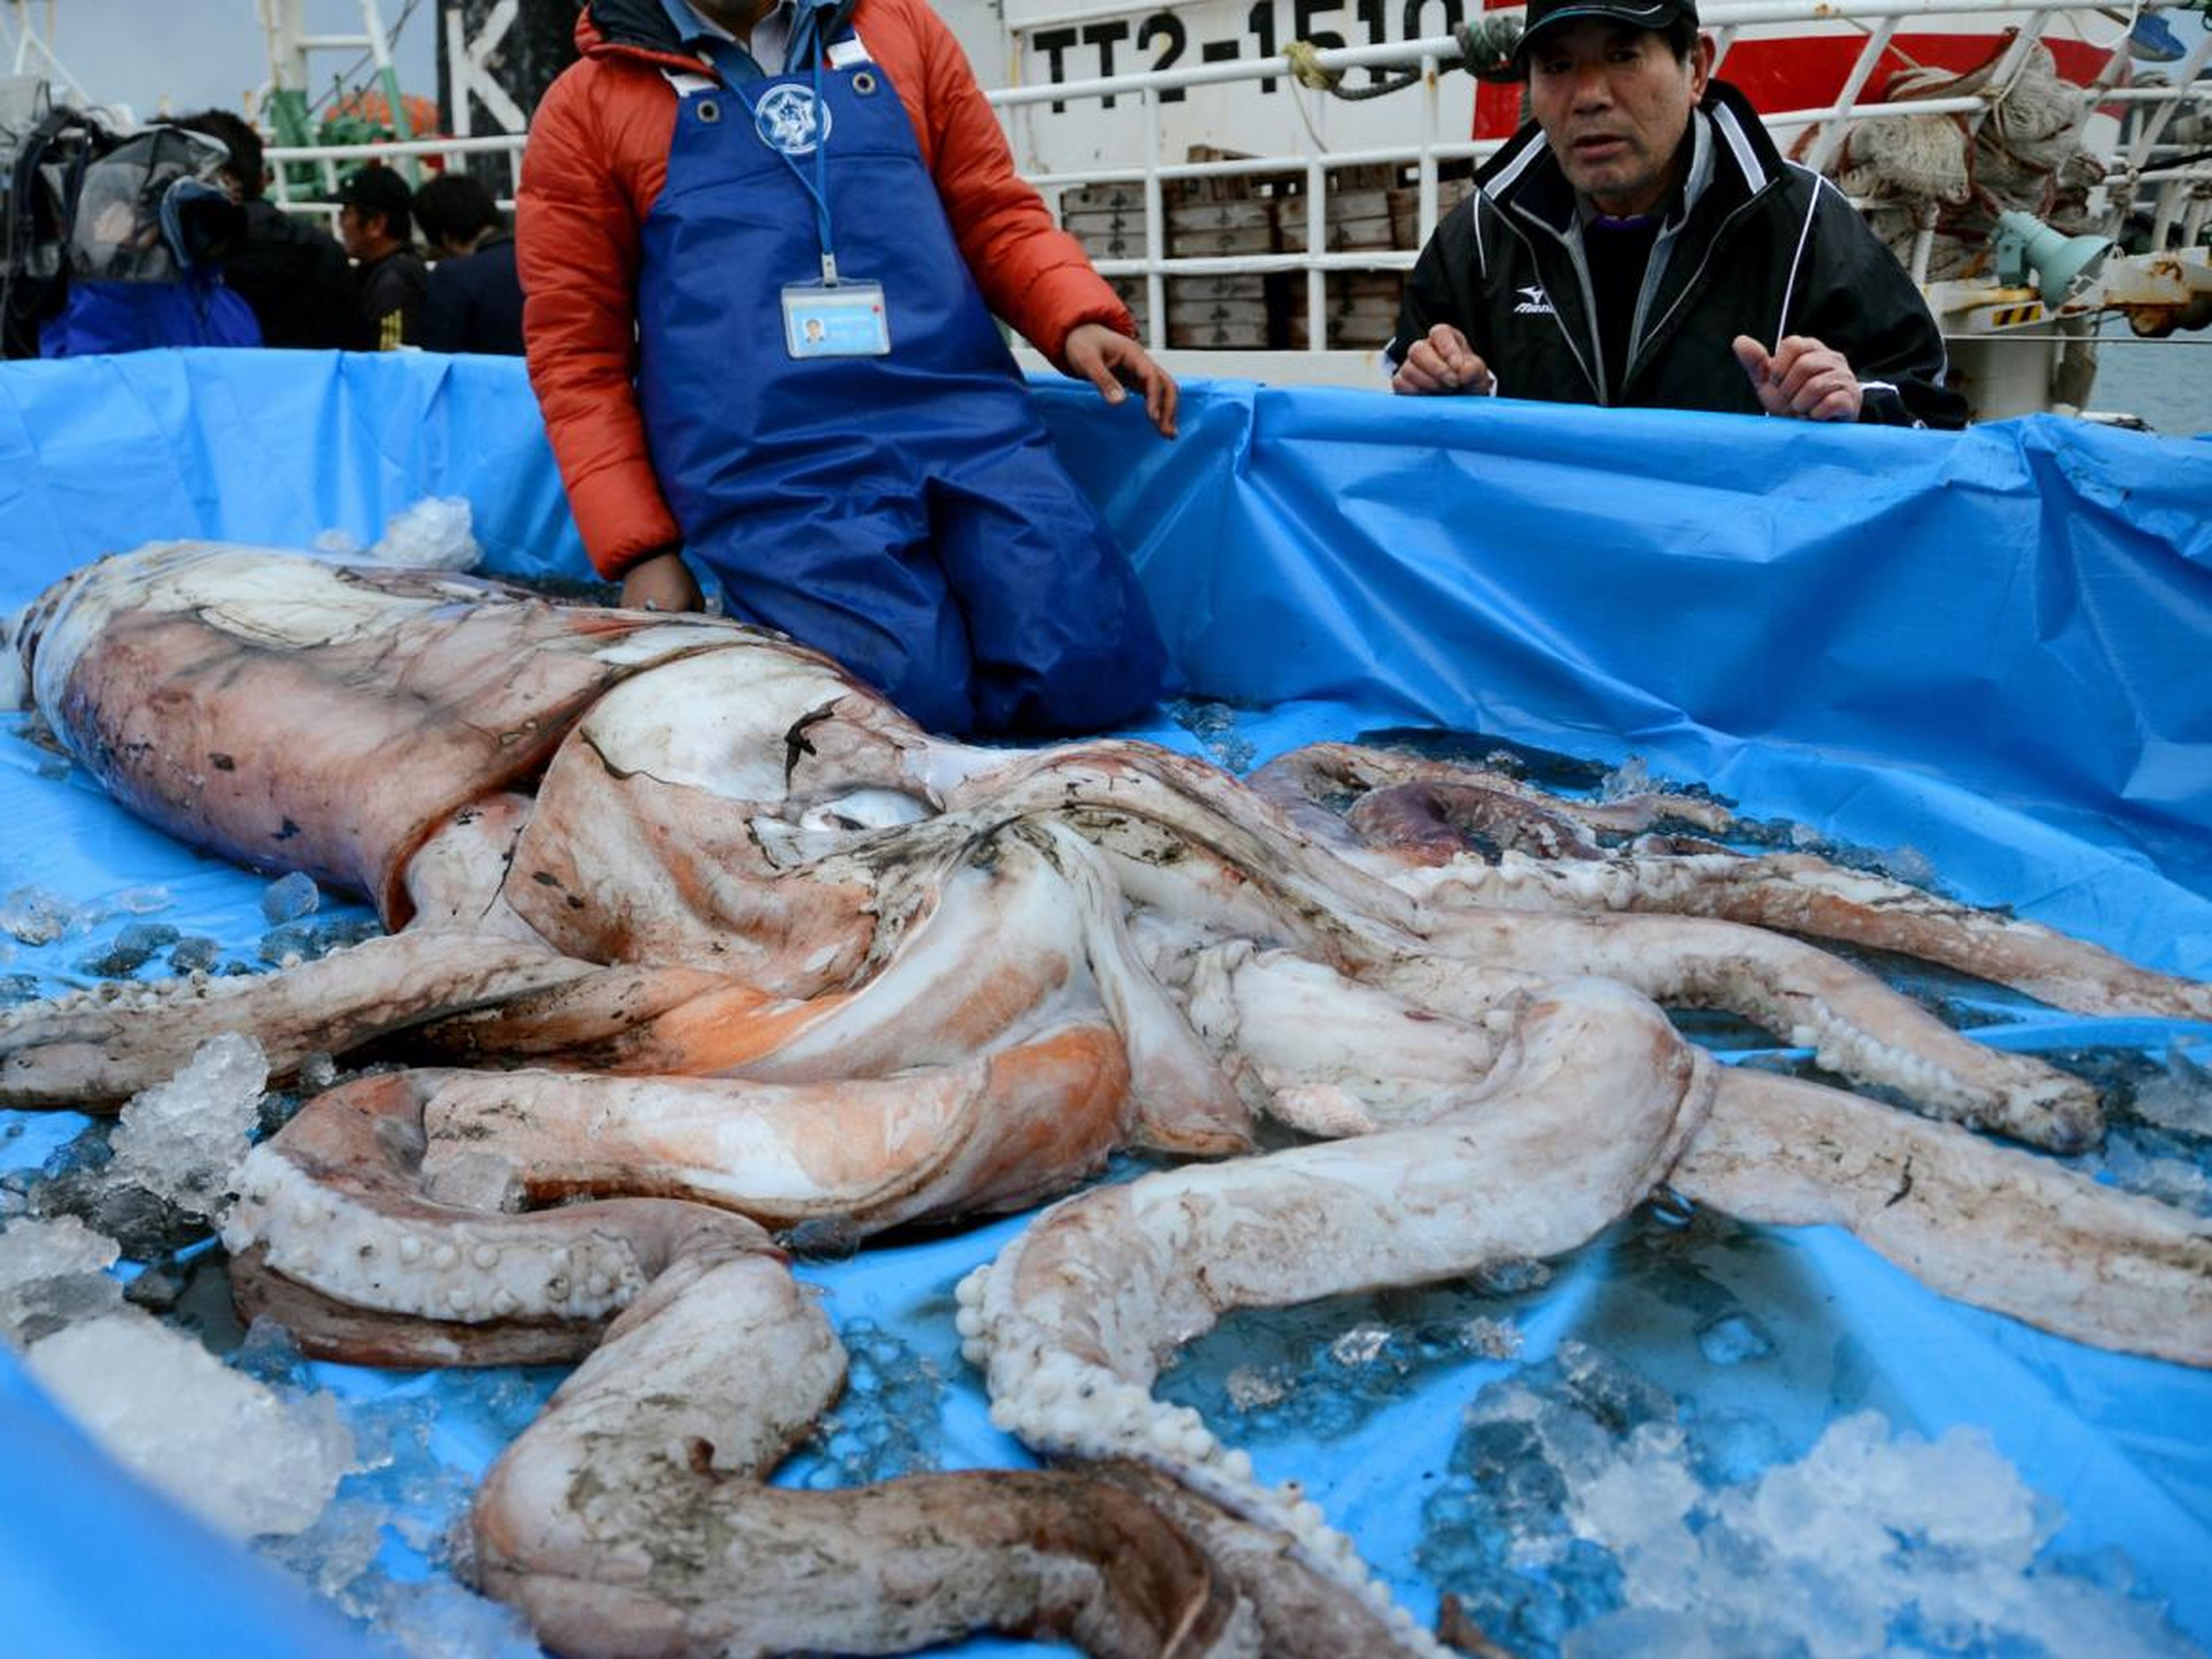 Un investigador mide la longitud del cuerpo de un calamar gigante en el puerto de Ajiro Shinko el 21 de enero de 2014 en Iwami, Tottori, Japón. El calamar gigante de 3,4 metros de largo fue capturado durante la pesca de arrastre.